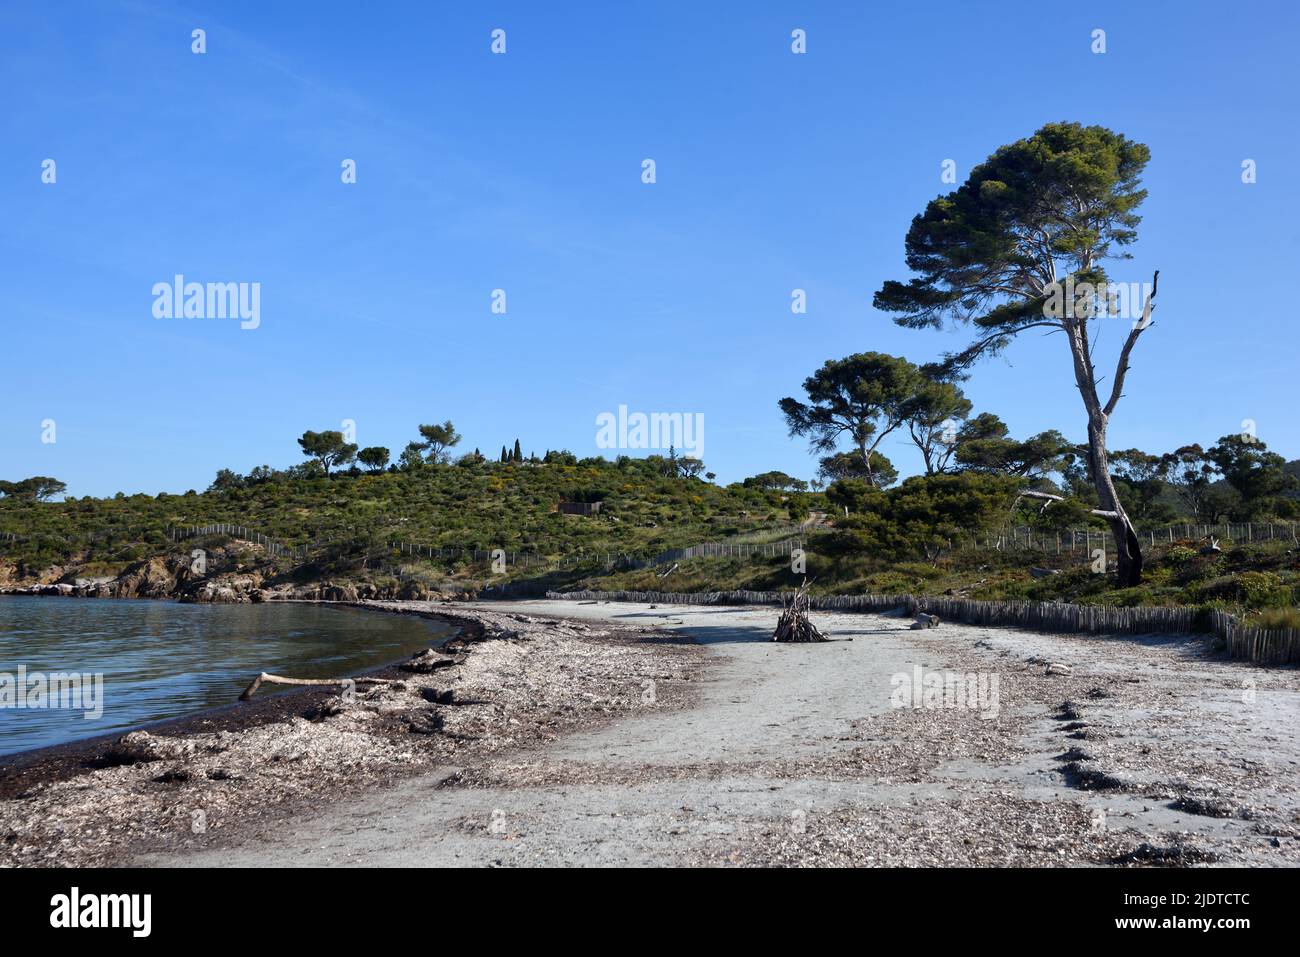 Plage déserte de Cabasson sur le sentier côtier ou Sentier du littoral Bormes-les-Mimosas Var Provence France Banque D'Images